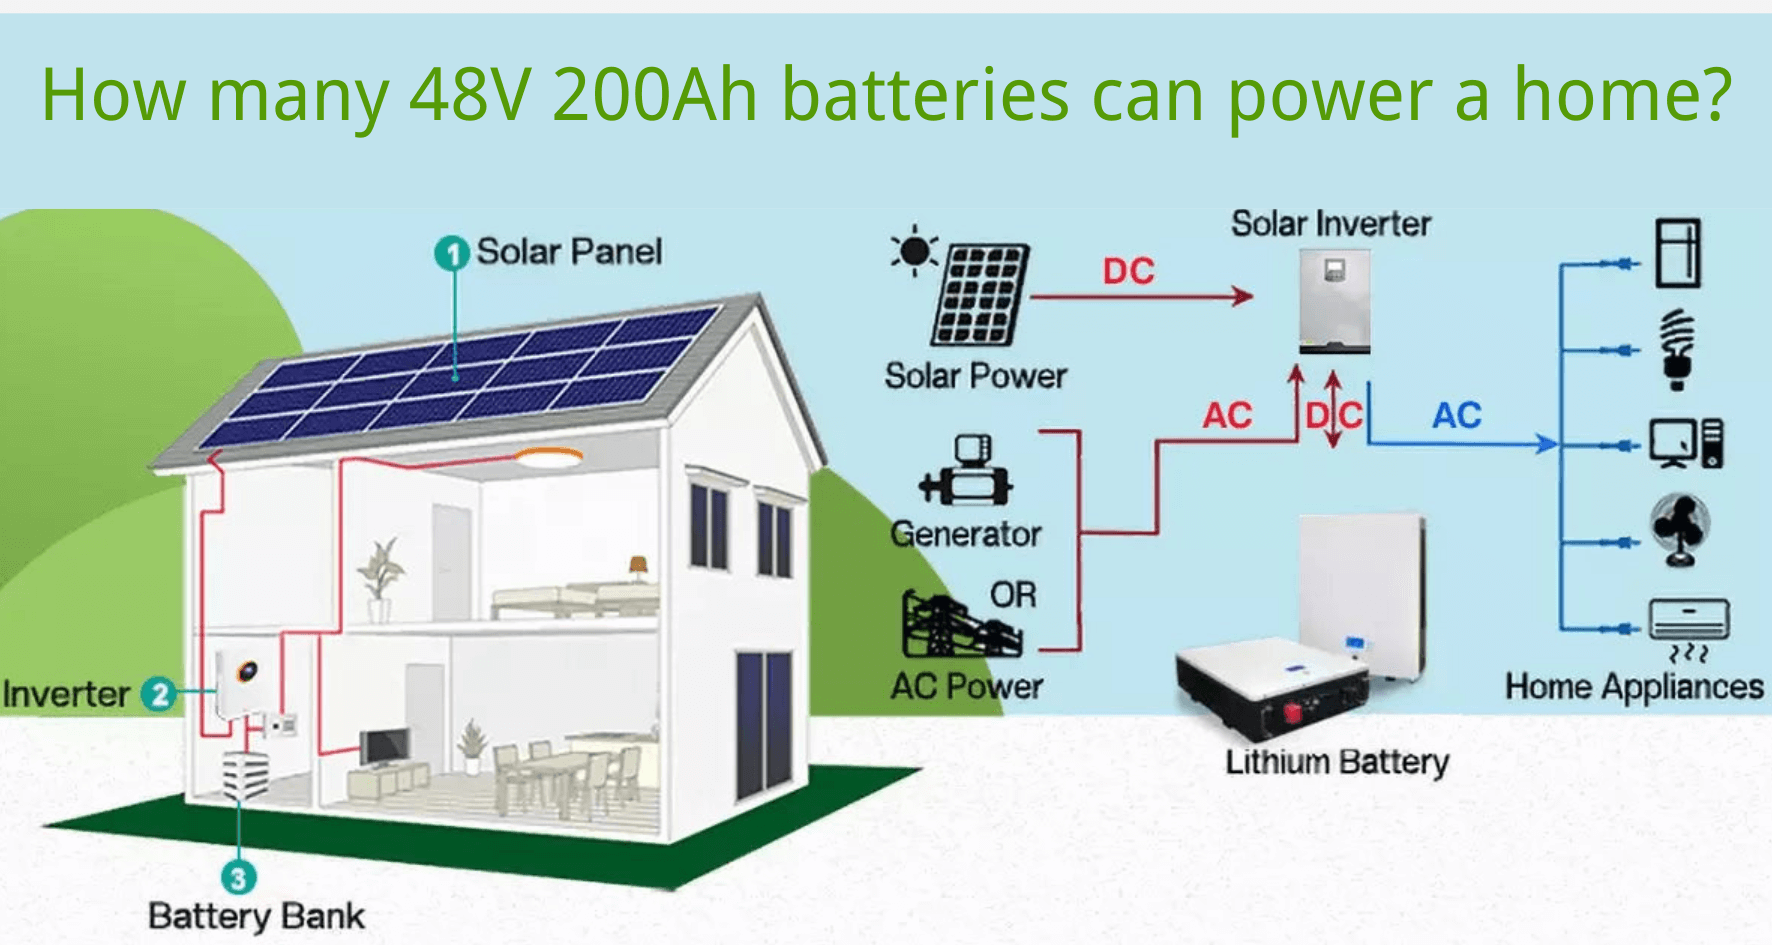 Berapa banyak baterai 48V 200Ah yang dapat memberi daya pada rumah? Amp Nova